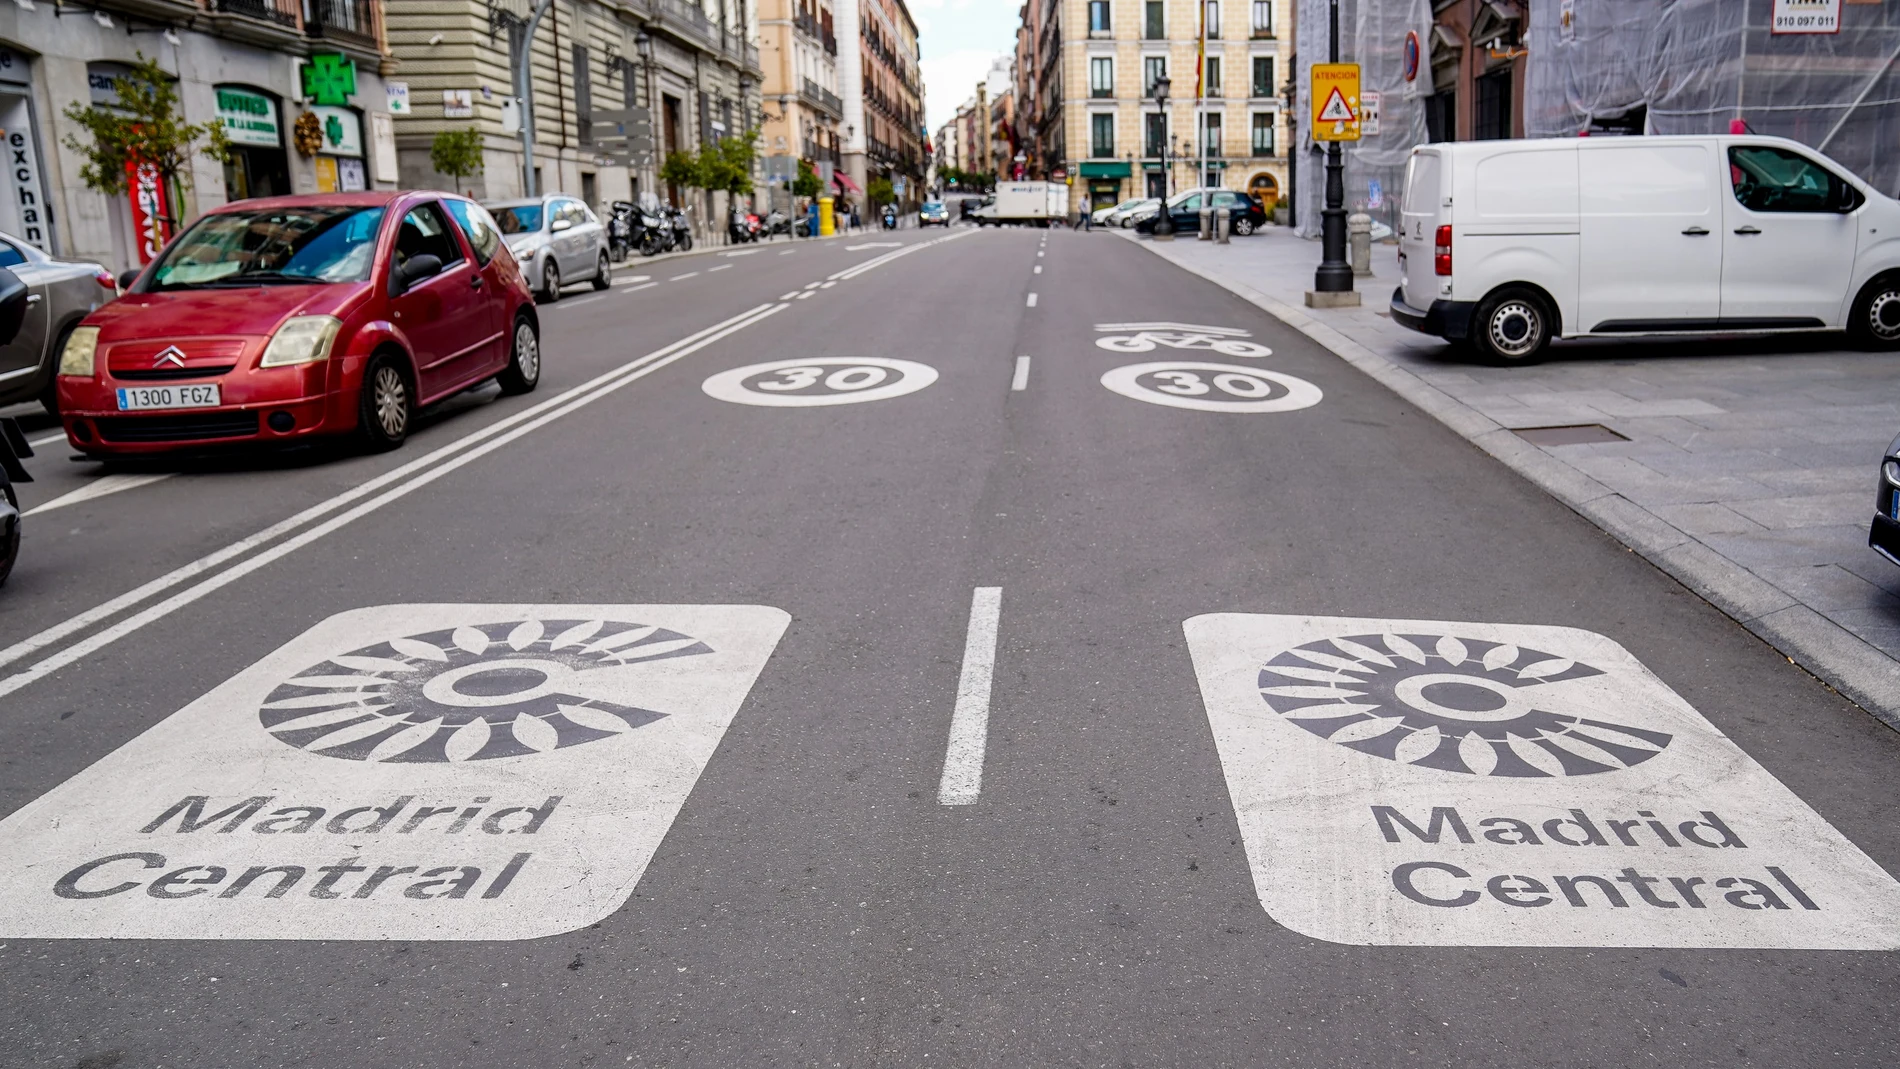 Dos señales de Madrid Central en la carretera, a 11 de mayo de 2021, en Madrid